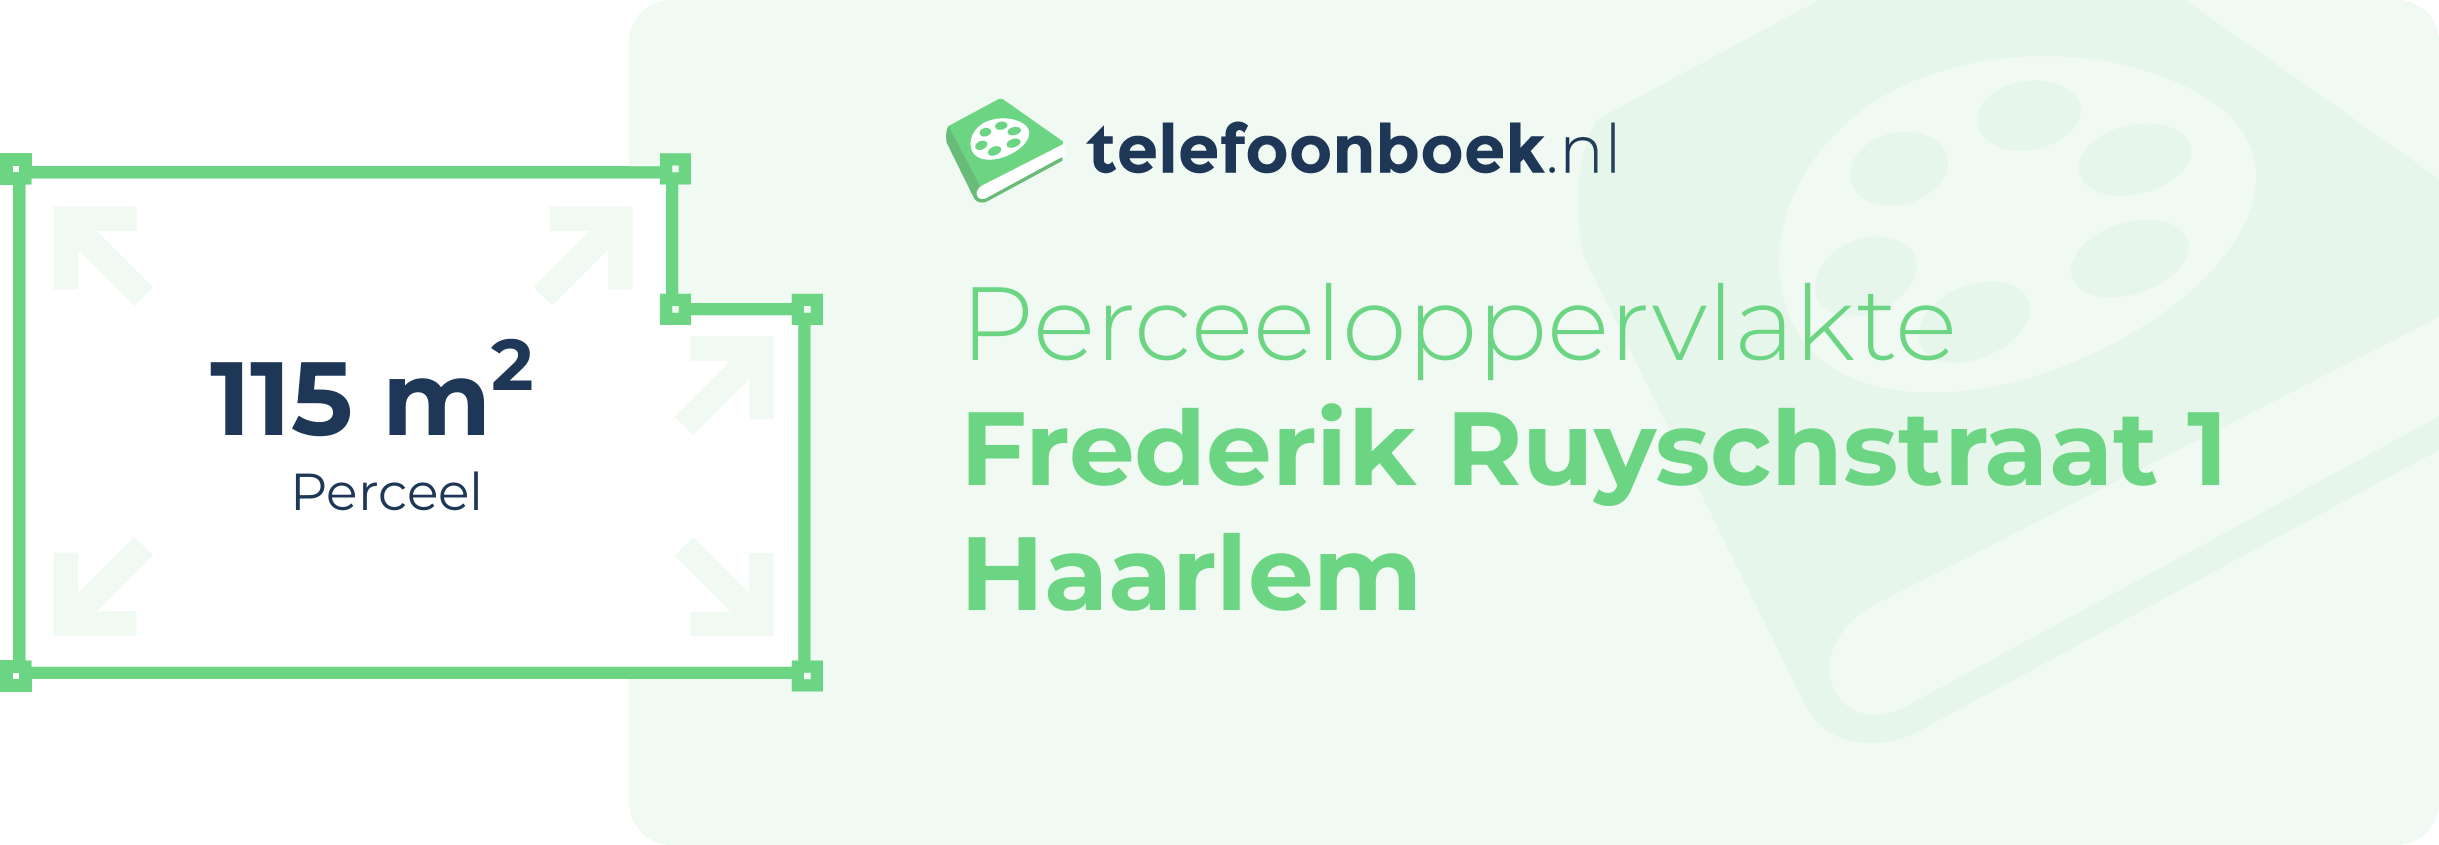 Perceeloppervlakte Frederik Ruyschstraat 1 Haarlem